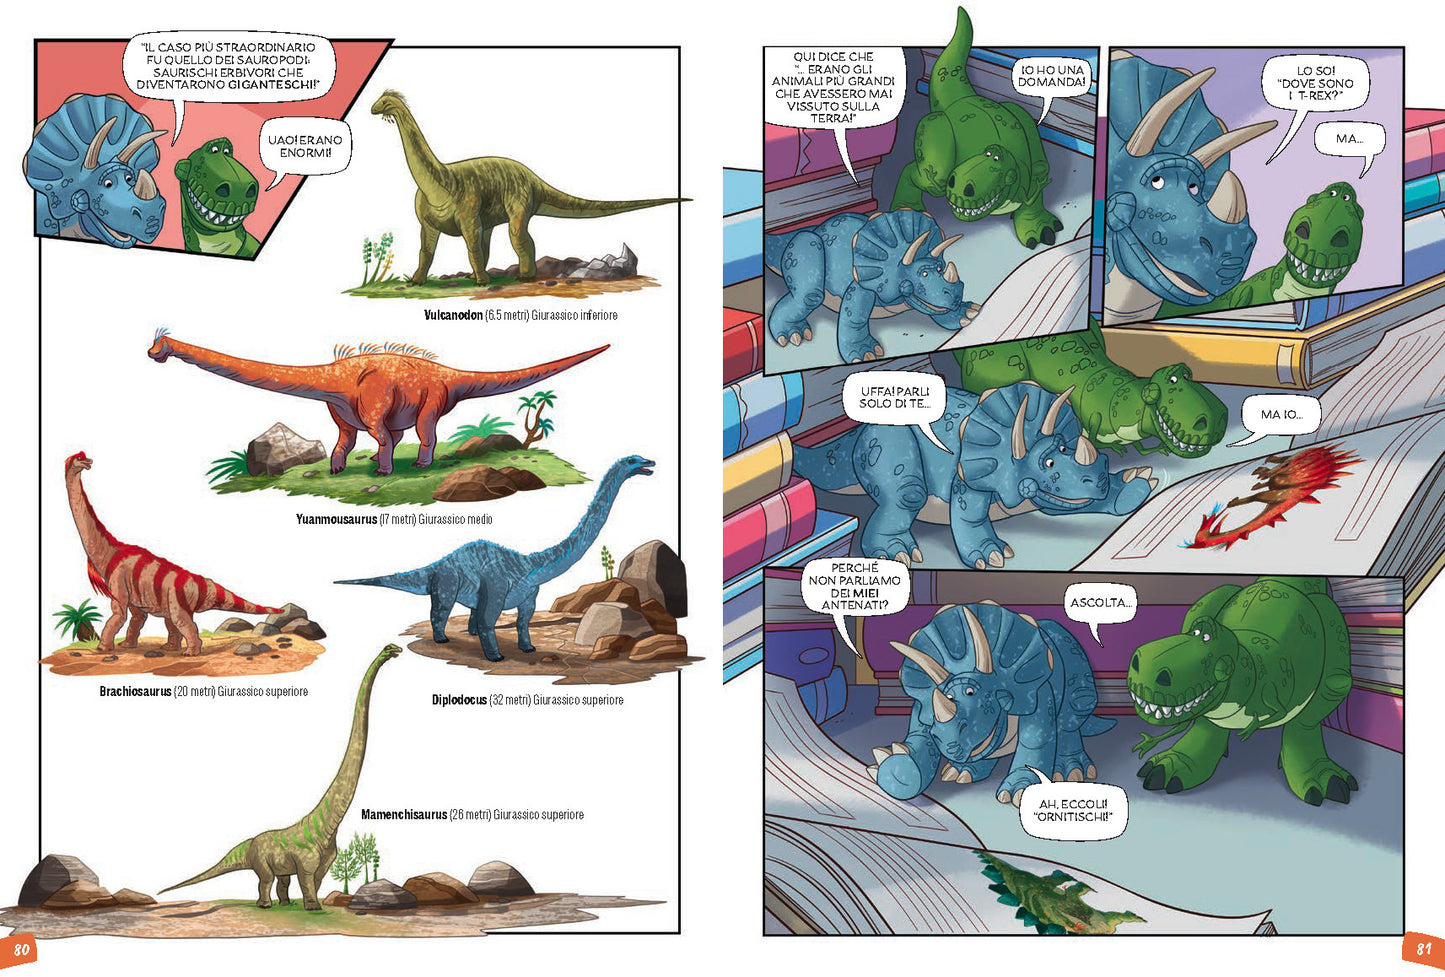 Alla scoperta dei dinosauri - Disney Scienza a fumetti